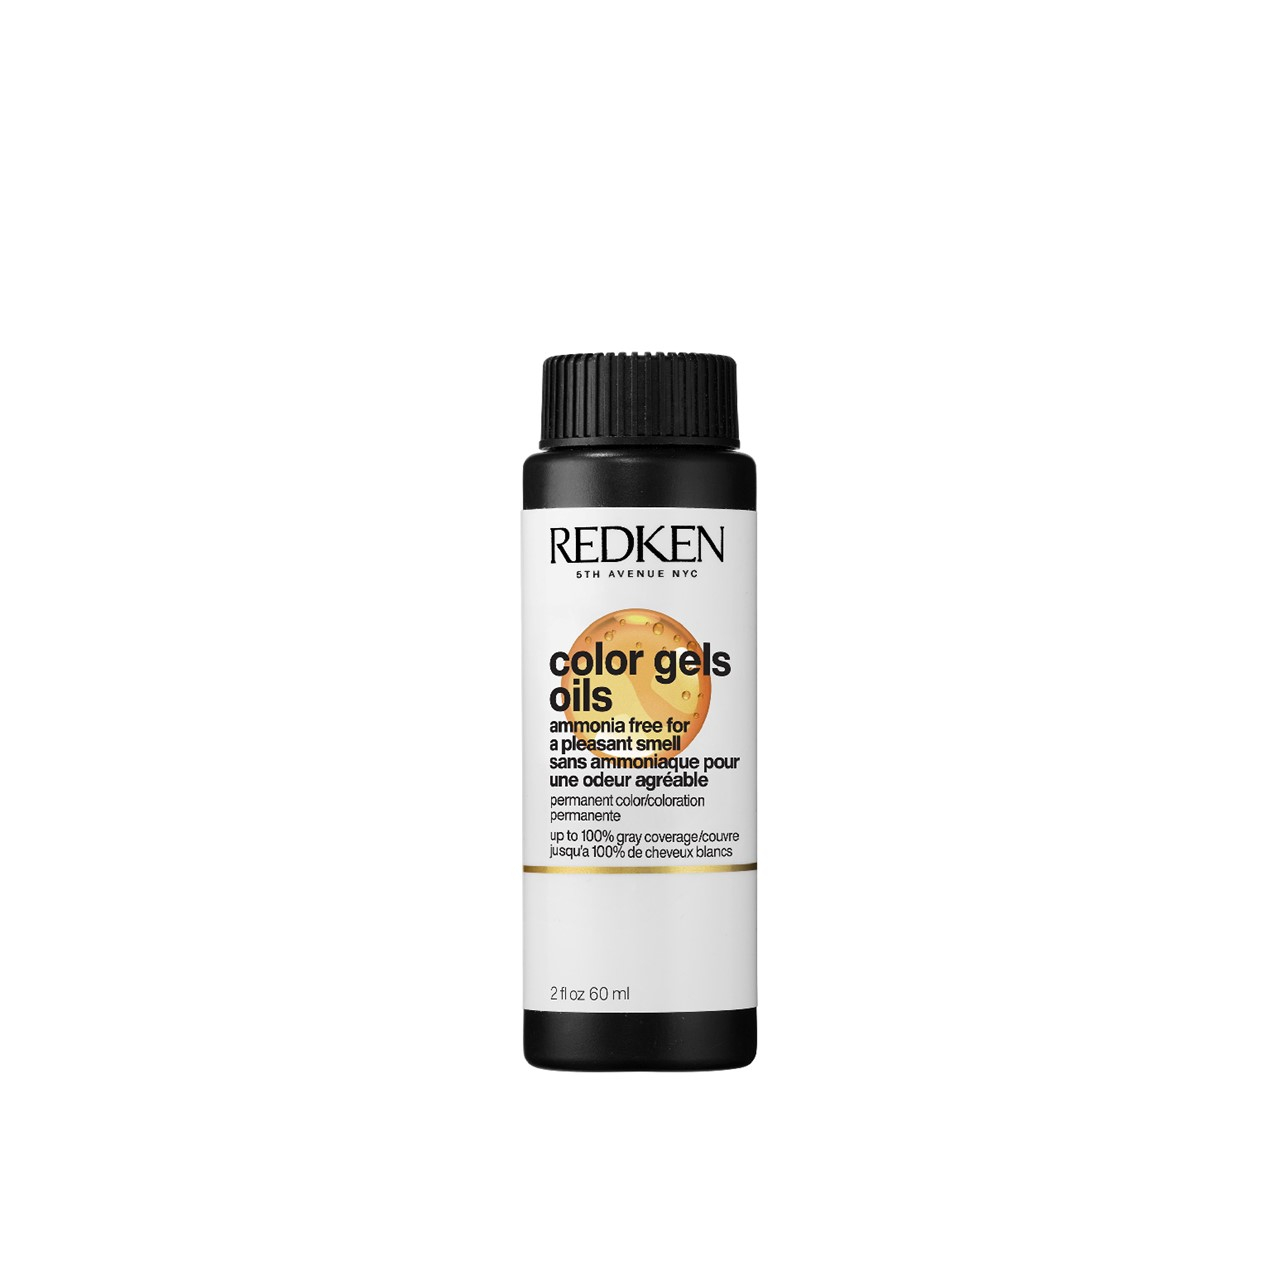 Redken Color Gels Oils 6G St Tropez Permanent Hair Dye 60ml (2.03 fl oz)